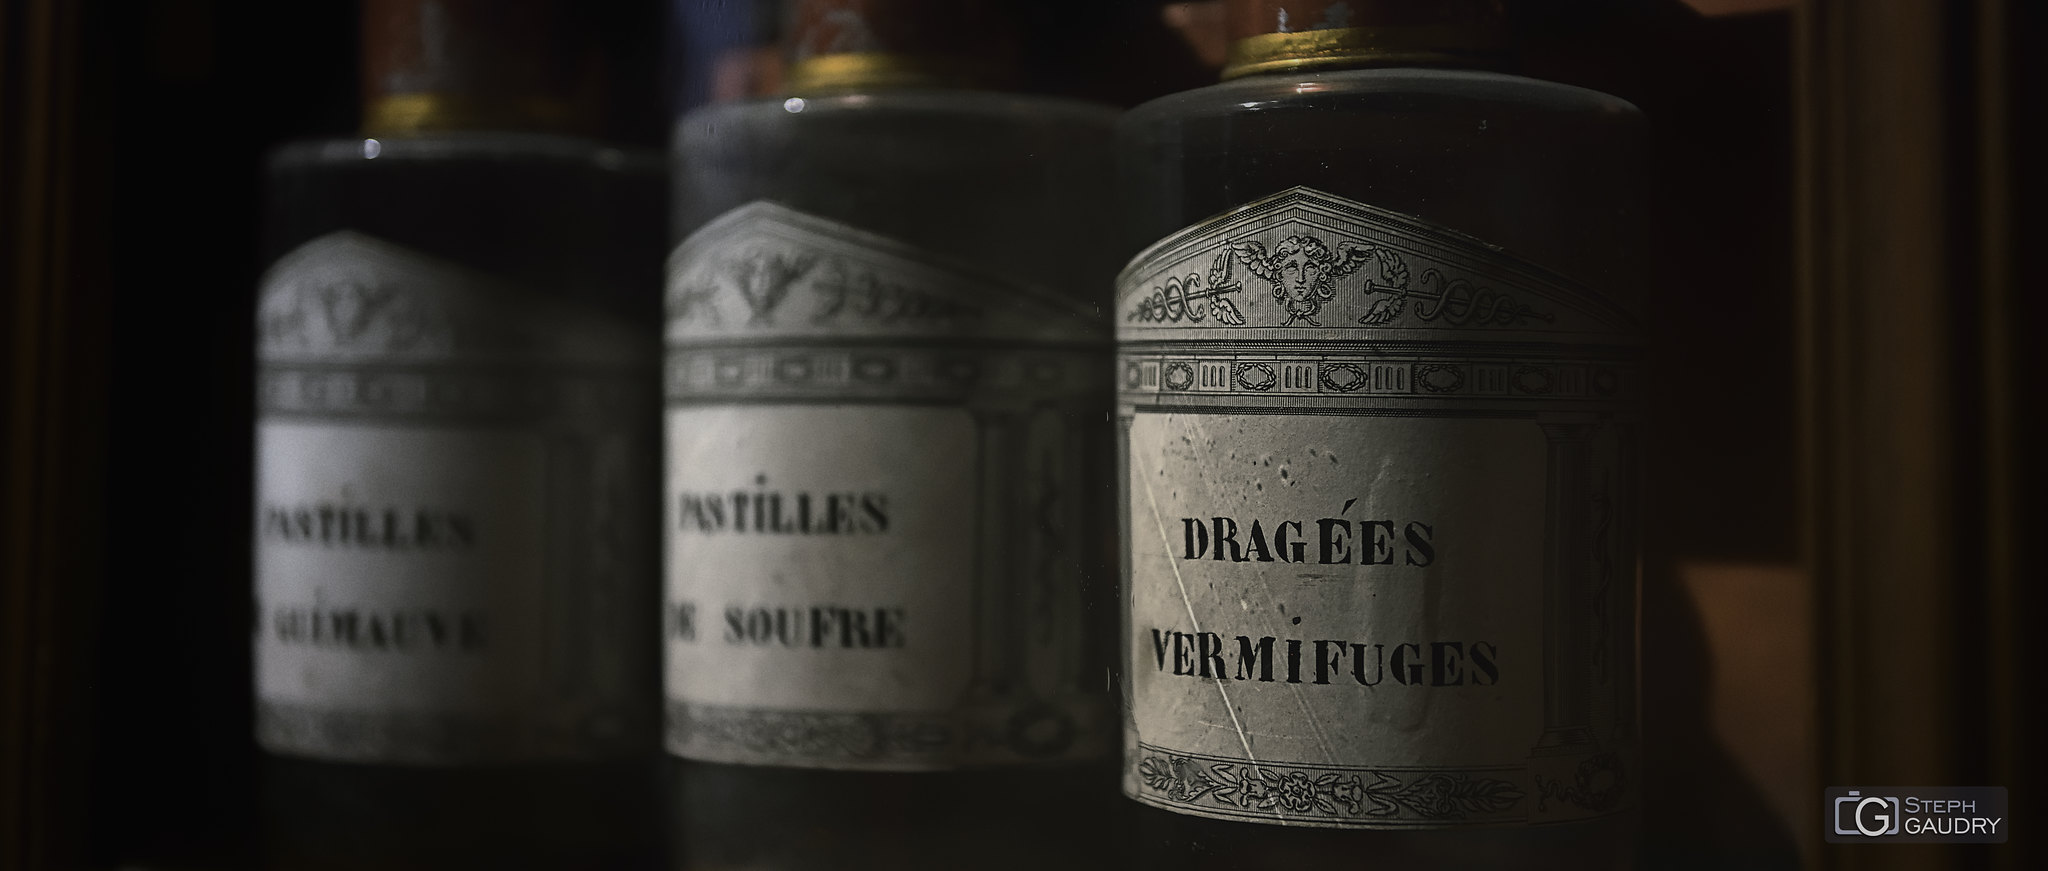 Dragées vermifuges [Click to start slideshow]